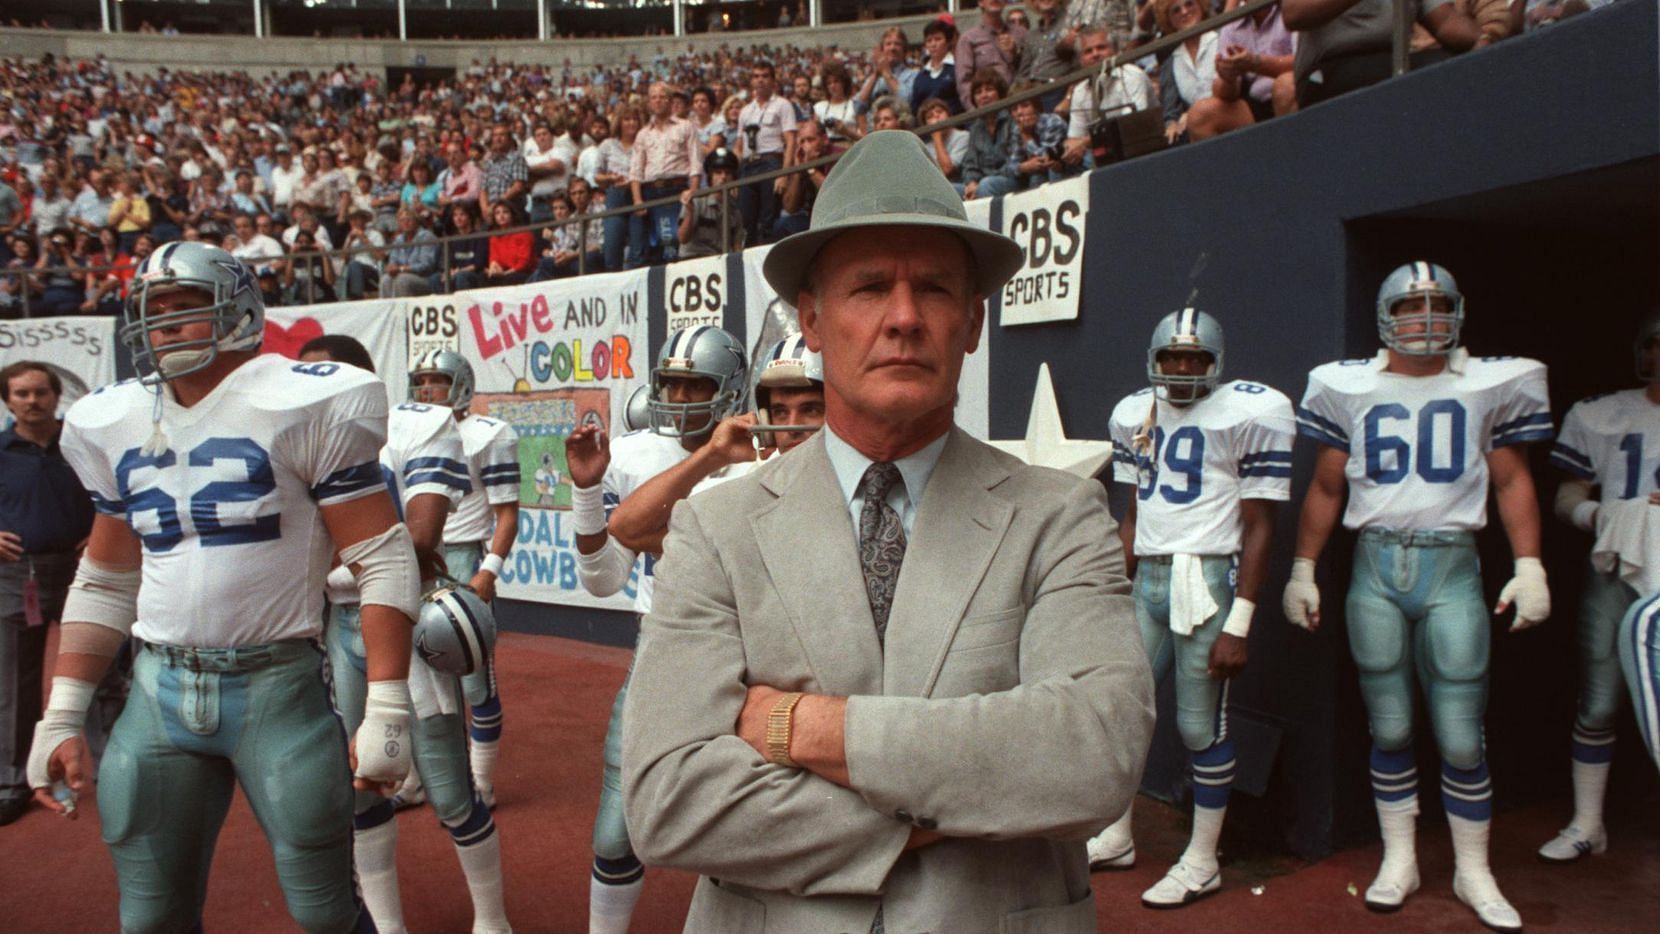 The legendary Cowboys coach. Photo via Dallasnews.com